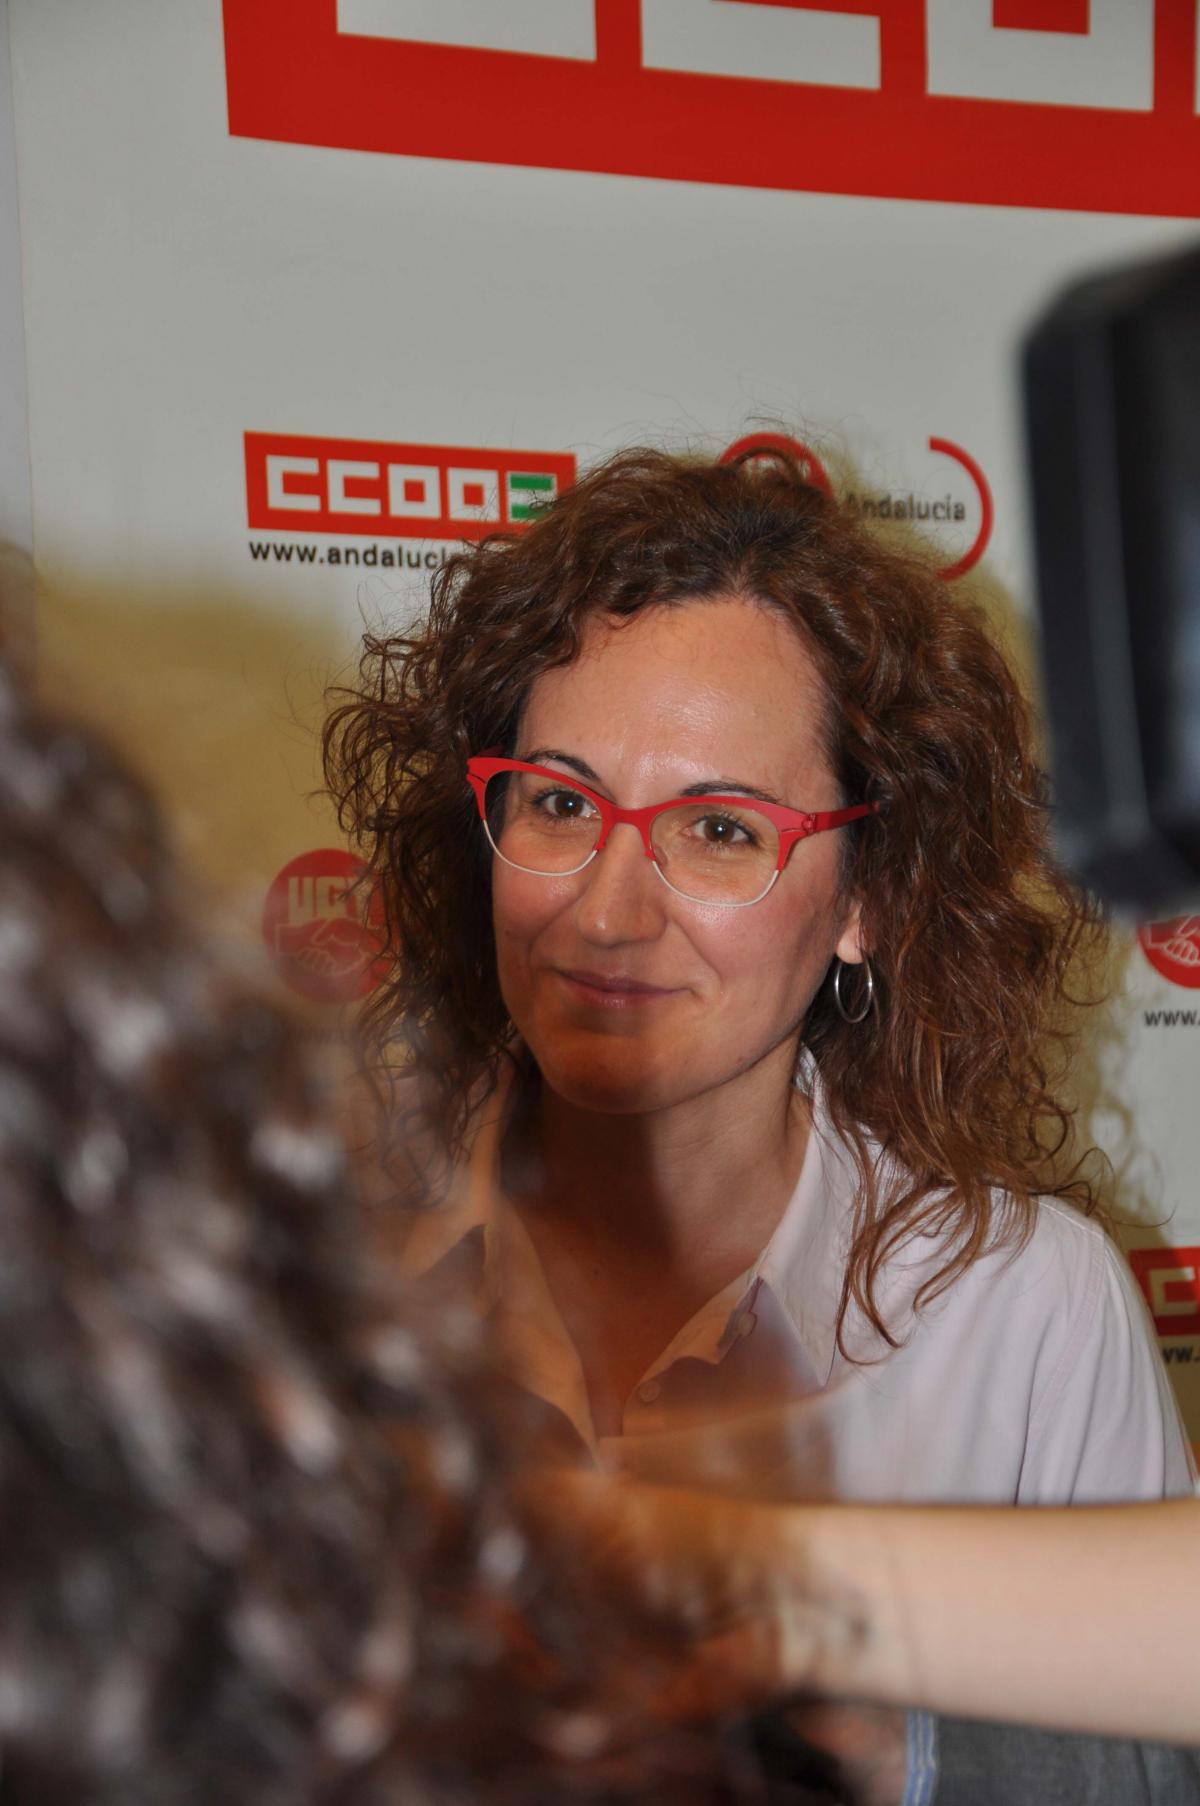 Nuria López Marín atiende a los medios en el acto #ParticipoyDecido